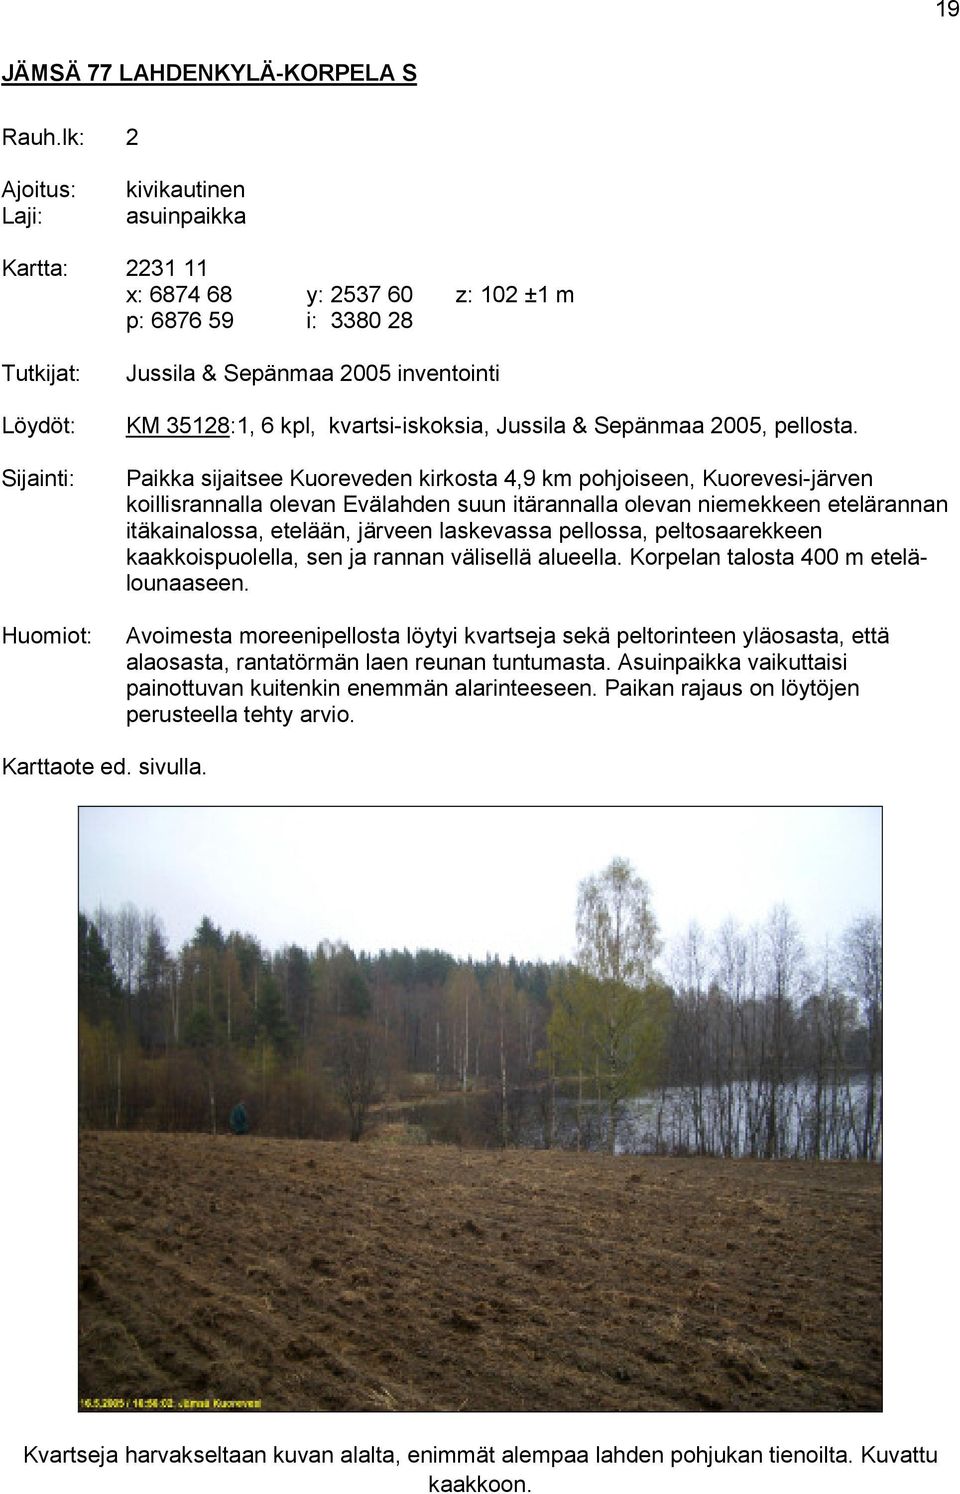 kvartsi-iskoksia, Jussila & Sepänmaa 2005, pellosta.